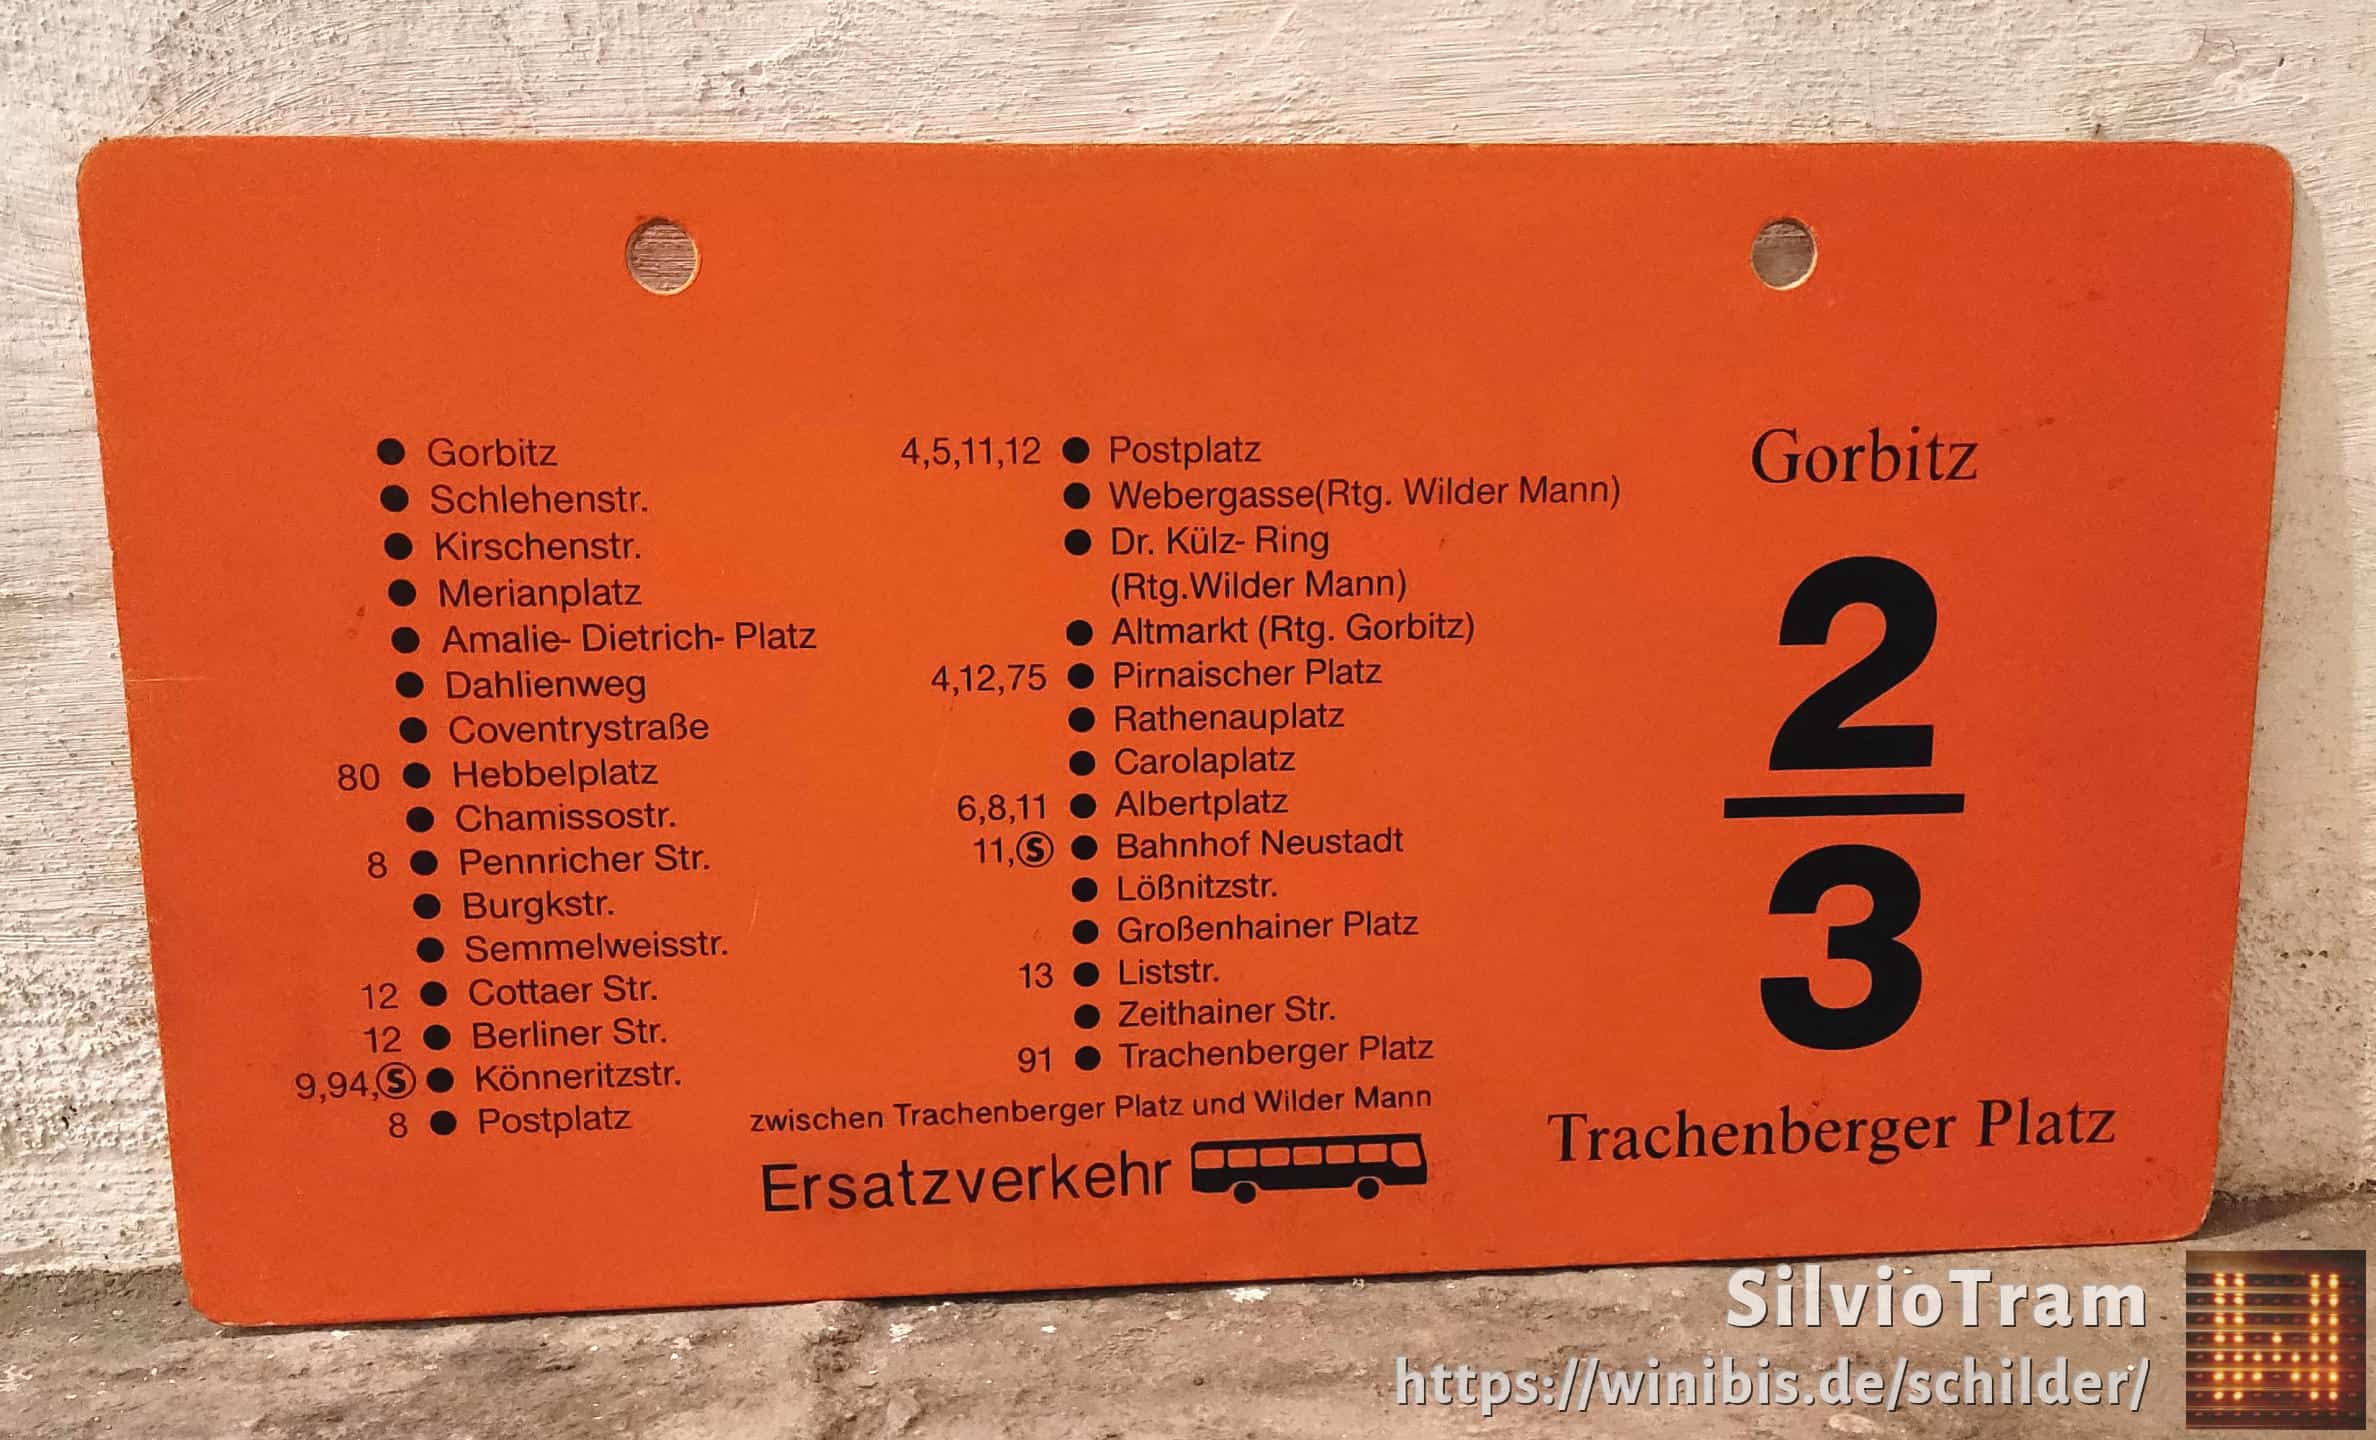 2/3 Gorbitz – Trachenberger Platz #4